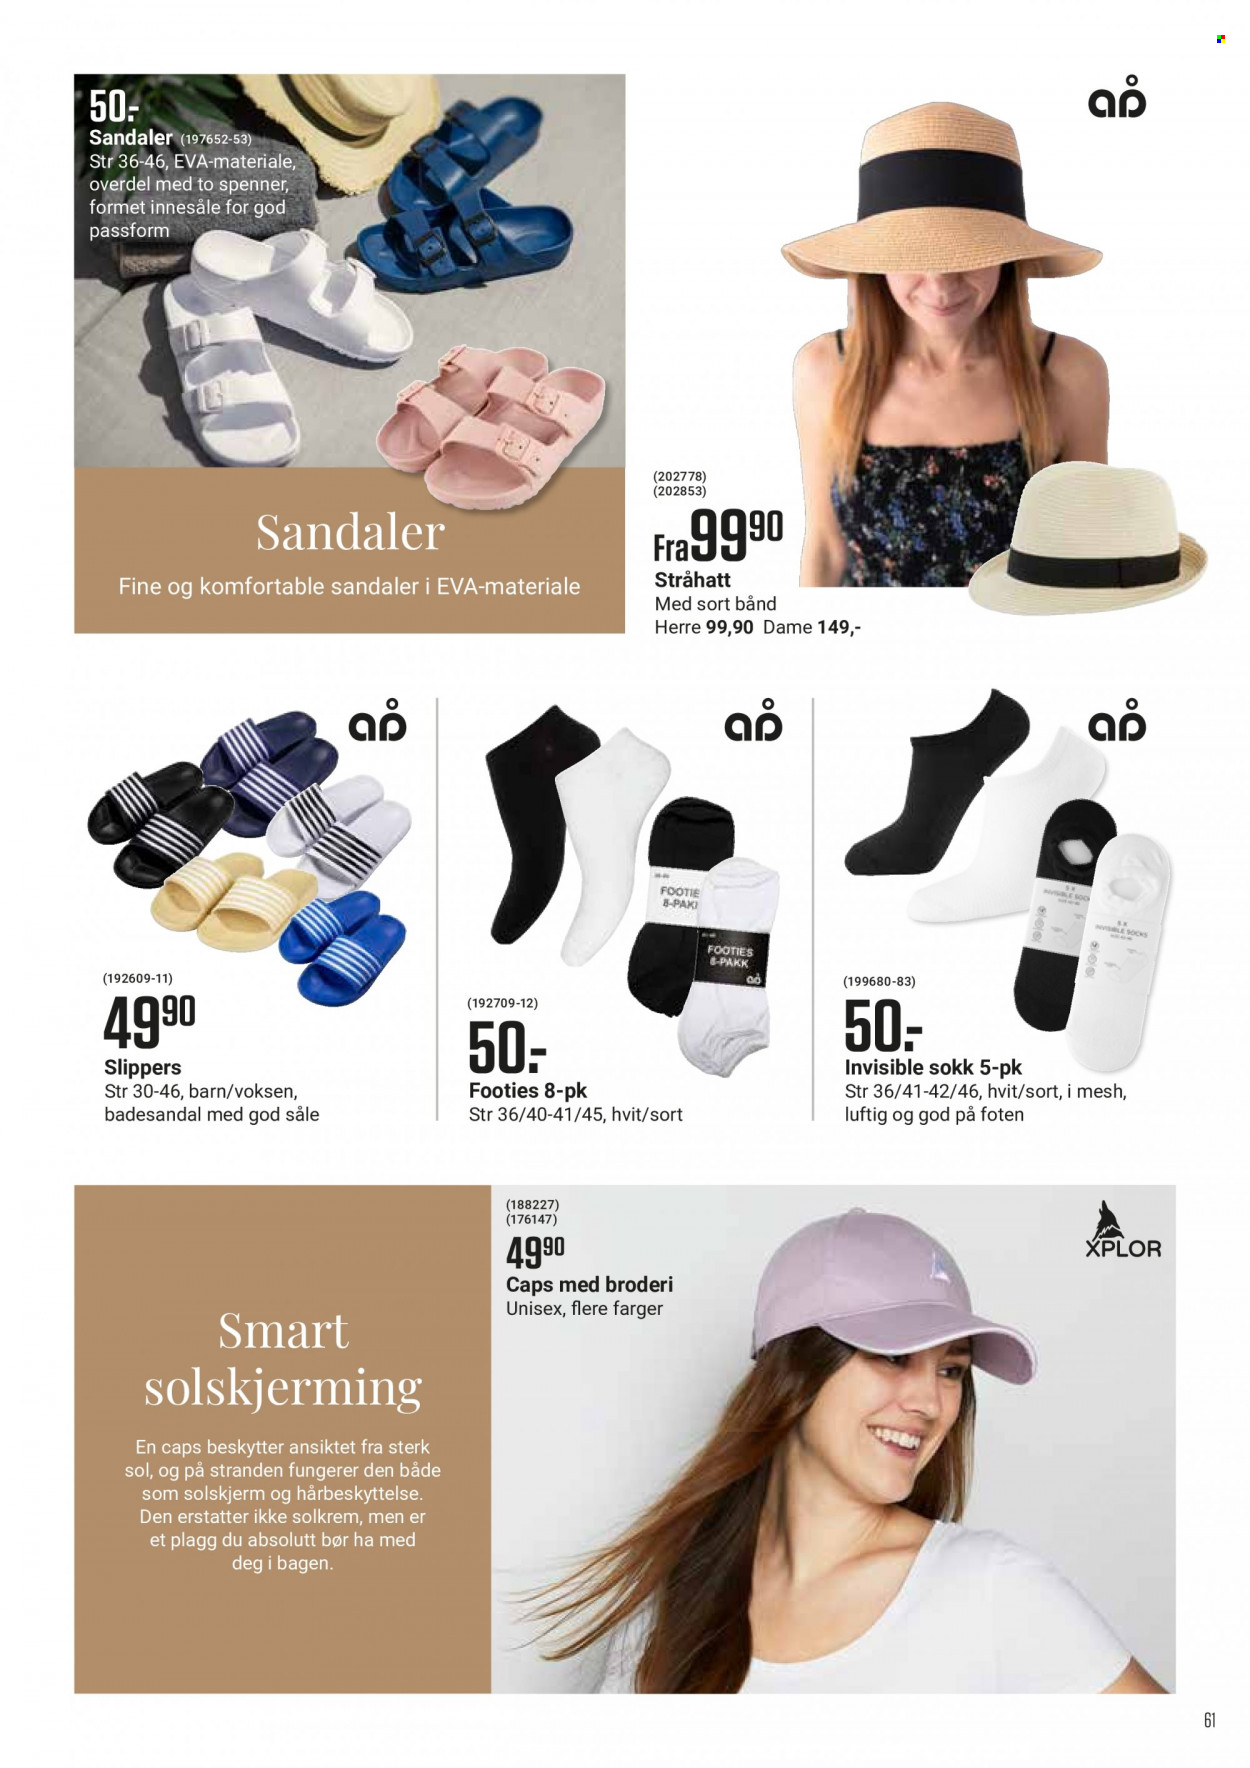 Kundeavis Europris - Produkter fra tilbudsaviser - sandal, voksen, solkrem. Side 61.